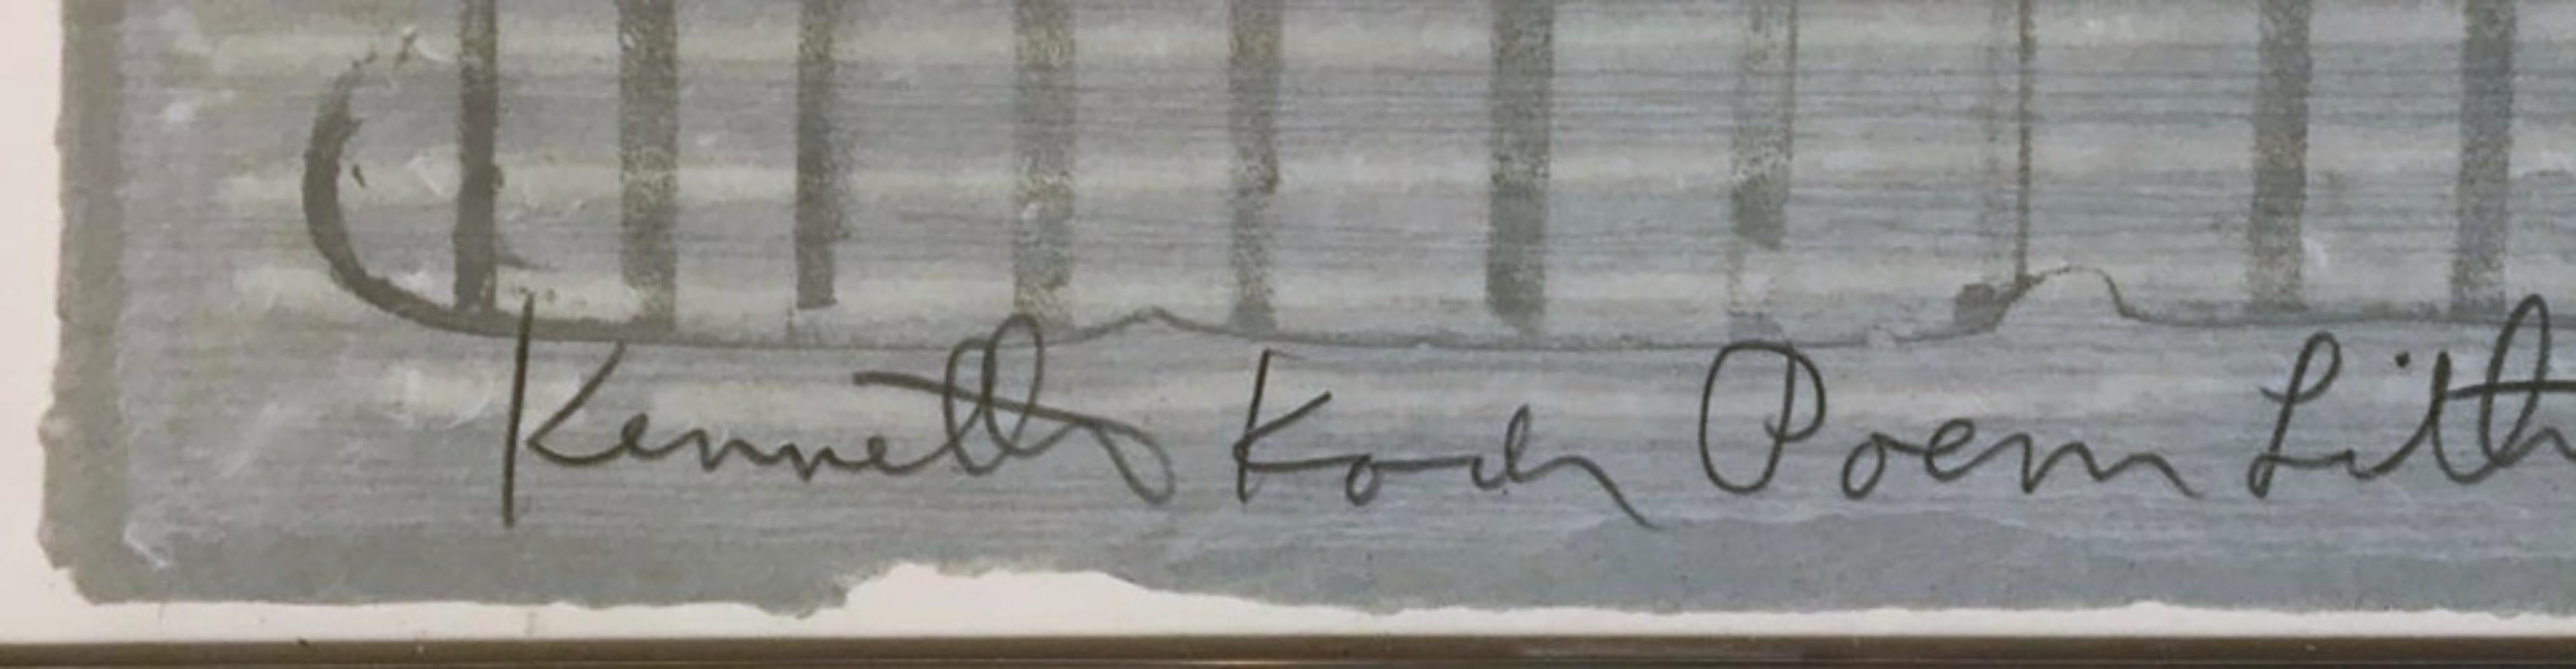 Jim Dine
Hommage de Kenneth Koch (Oh Foulard du Paradis, le ciel bleu est du pain au foulard), 1966
Lithographie en couleurs sur papier vélin gris bleu avec bords lustrés
37 × 24 1/2 pouces
Signé au crayon, numéroté 20/31 et inscrit au recto. Porte